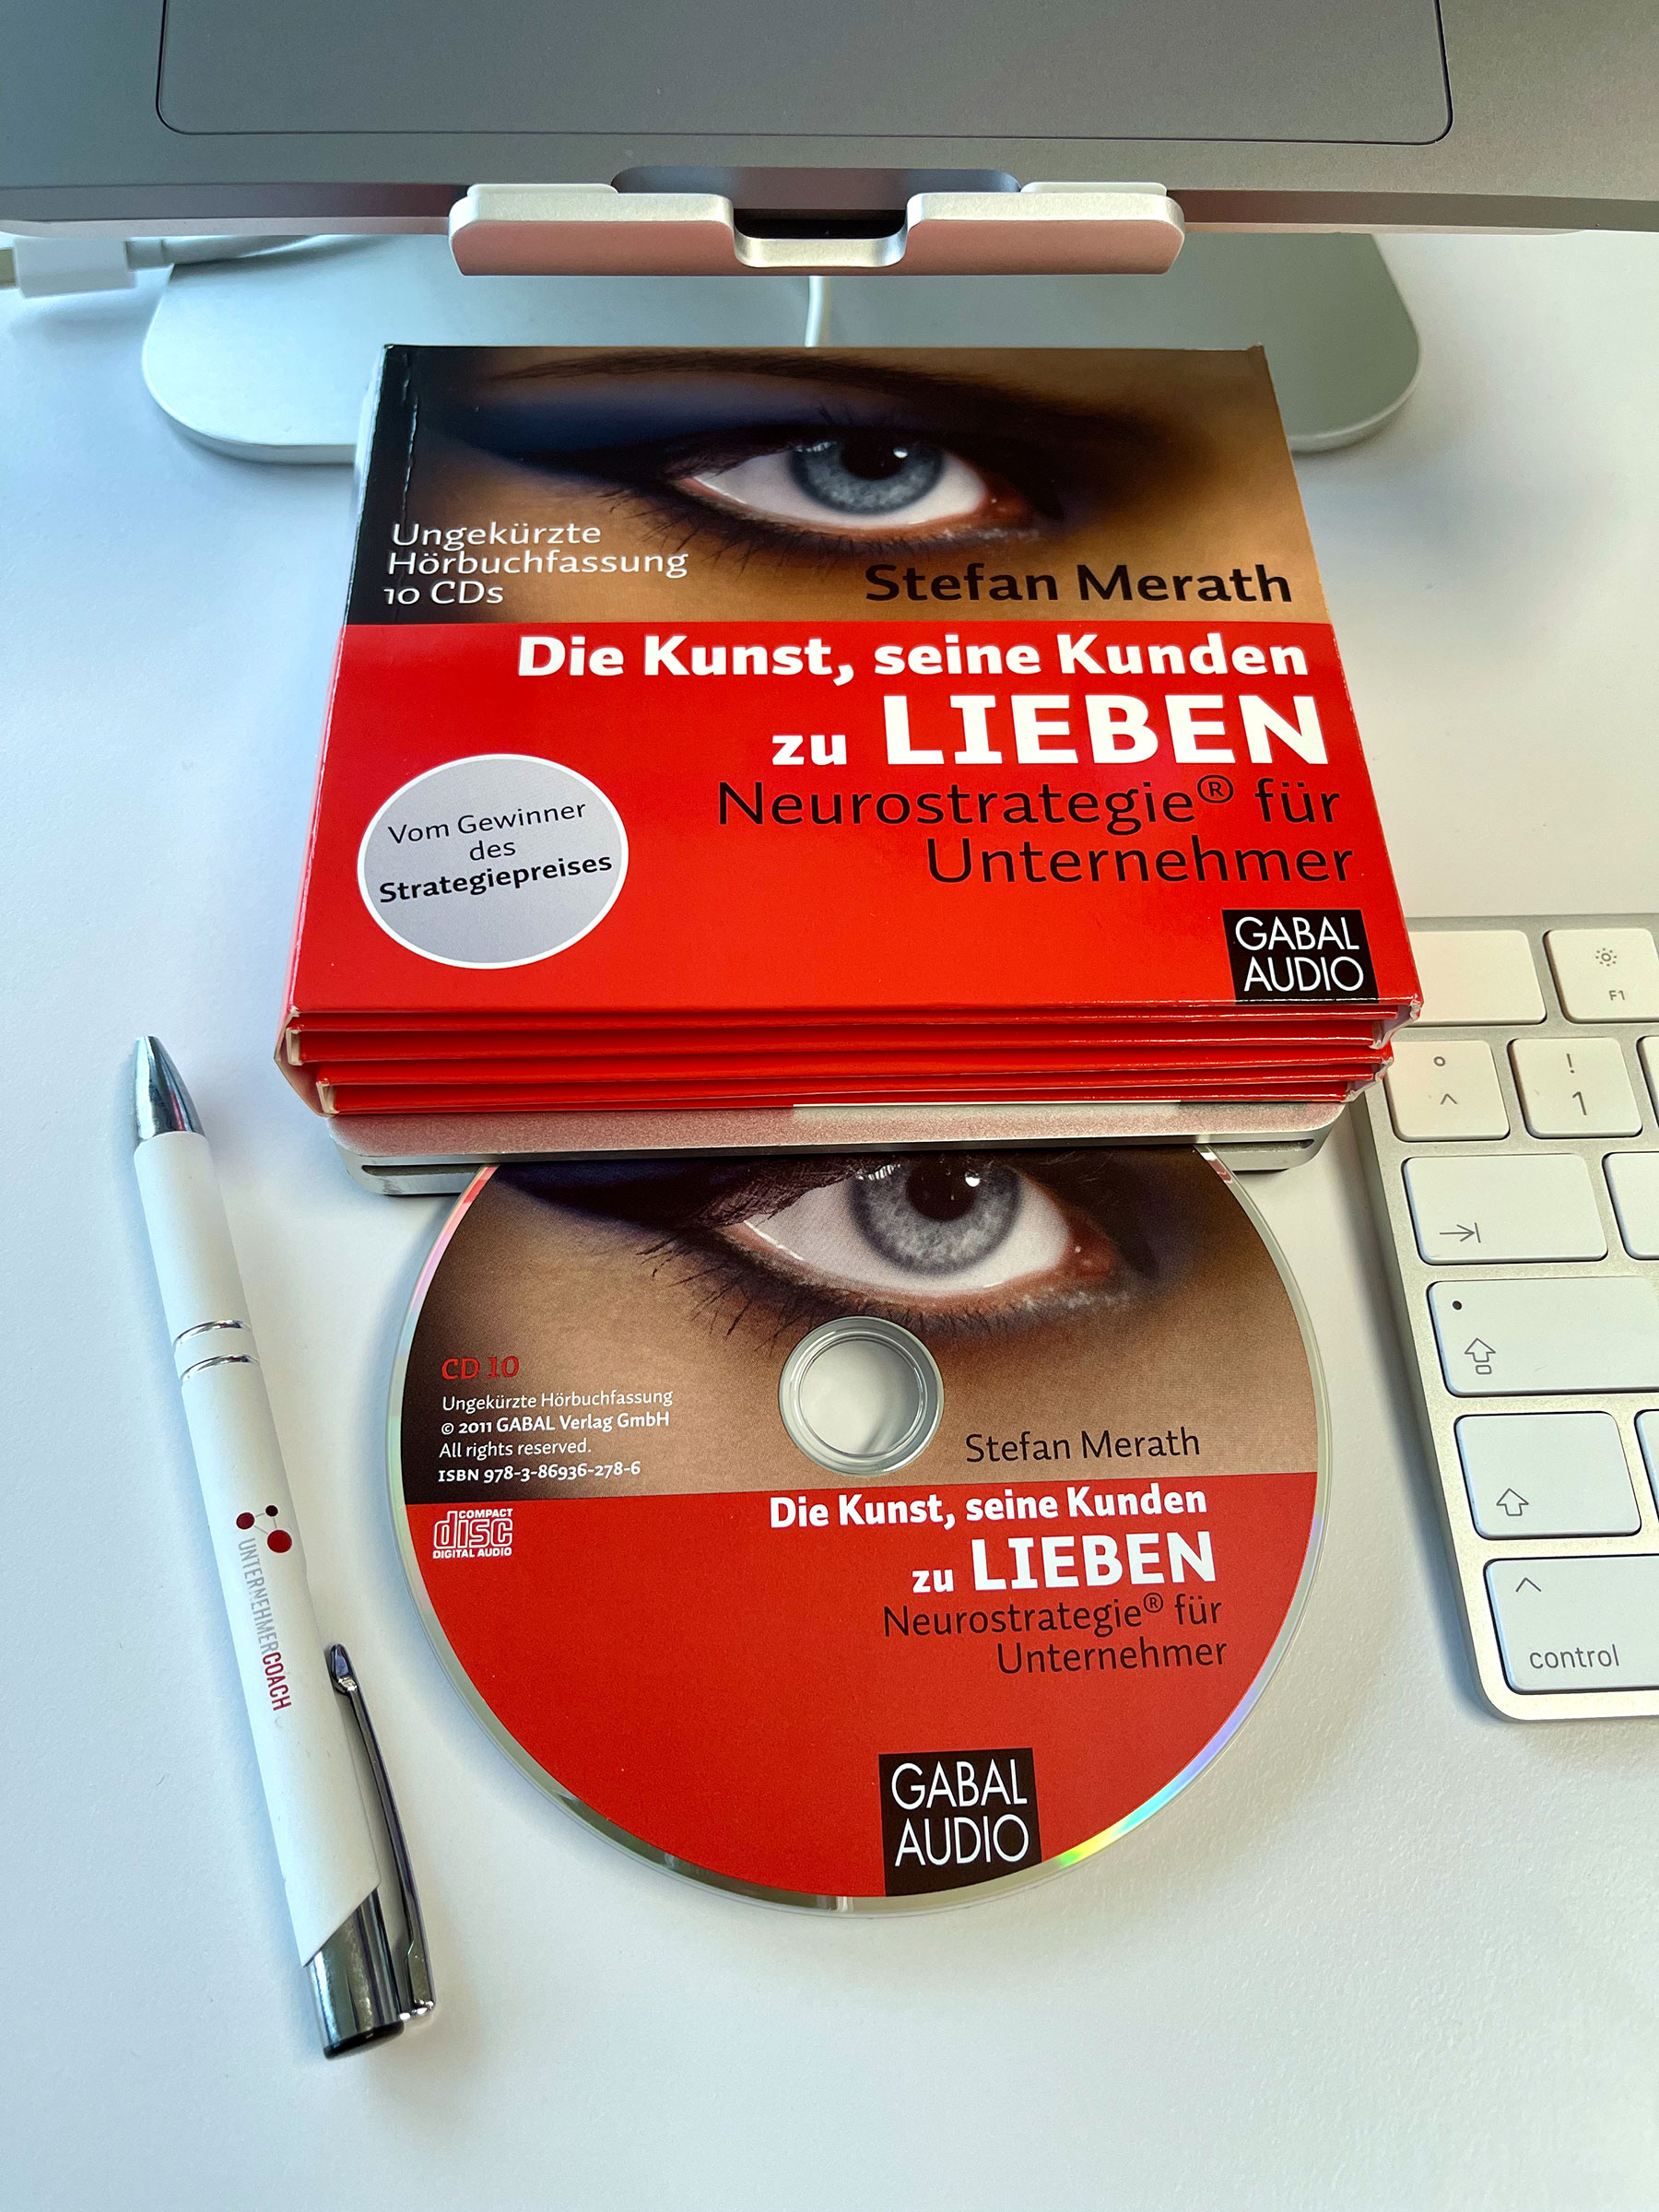 hoerbuch audio-cd die kunst seine kunden zu lieben auf schreibtisch mit kugelschreiber